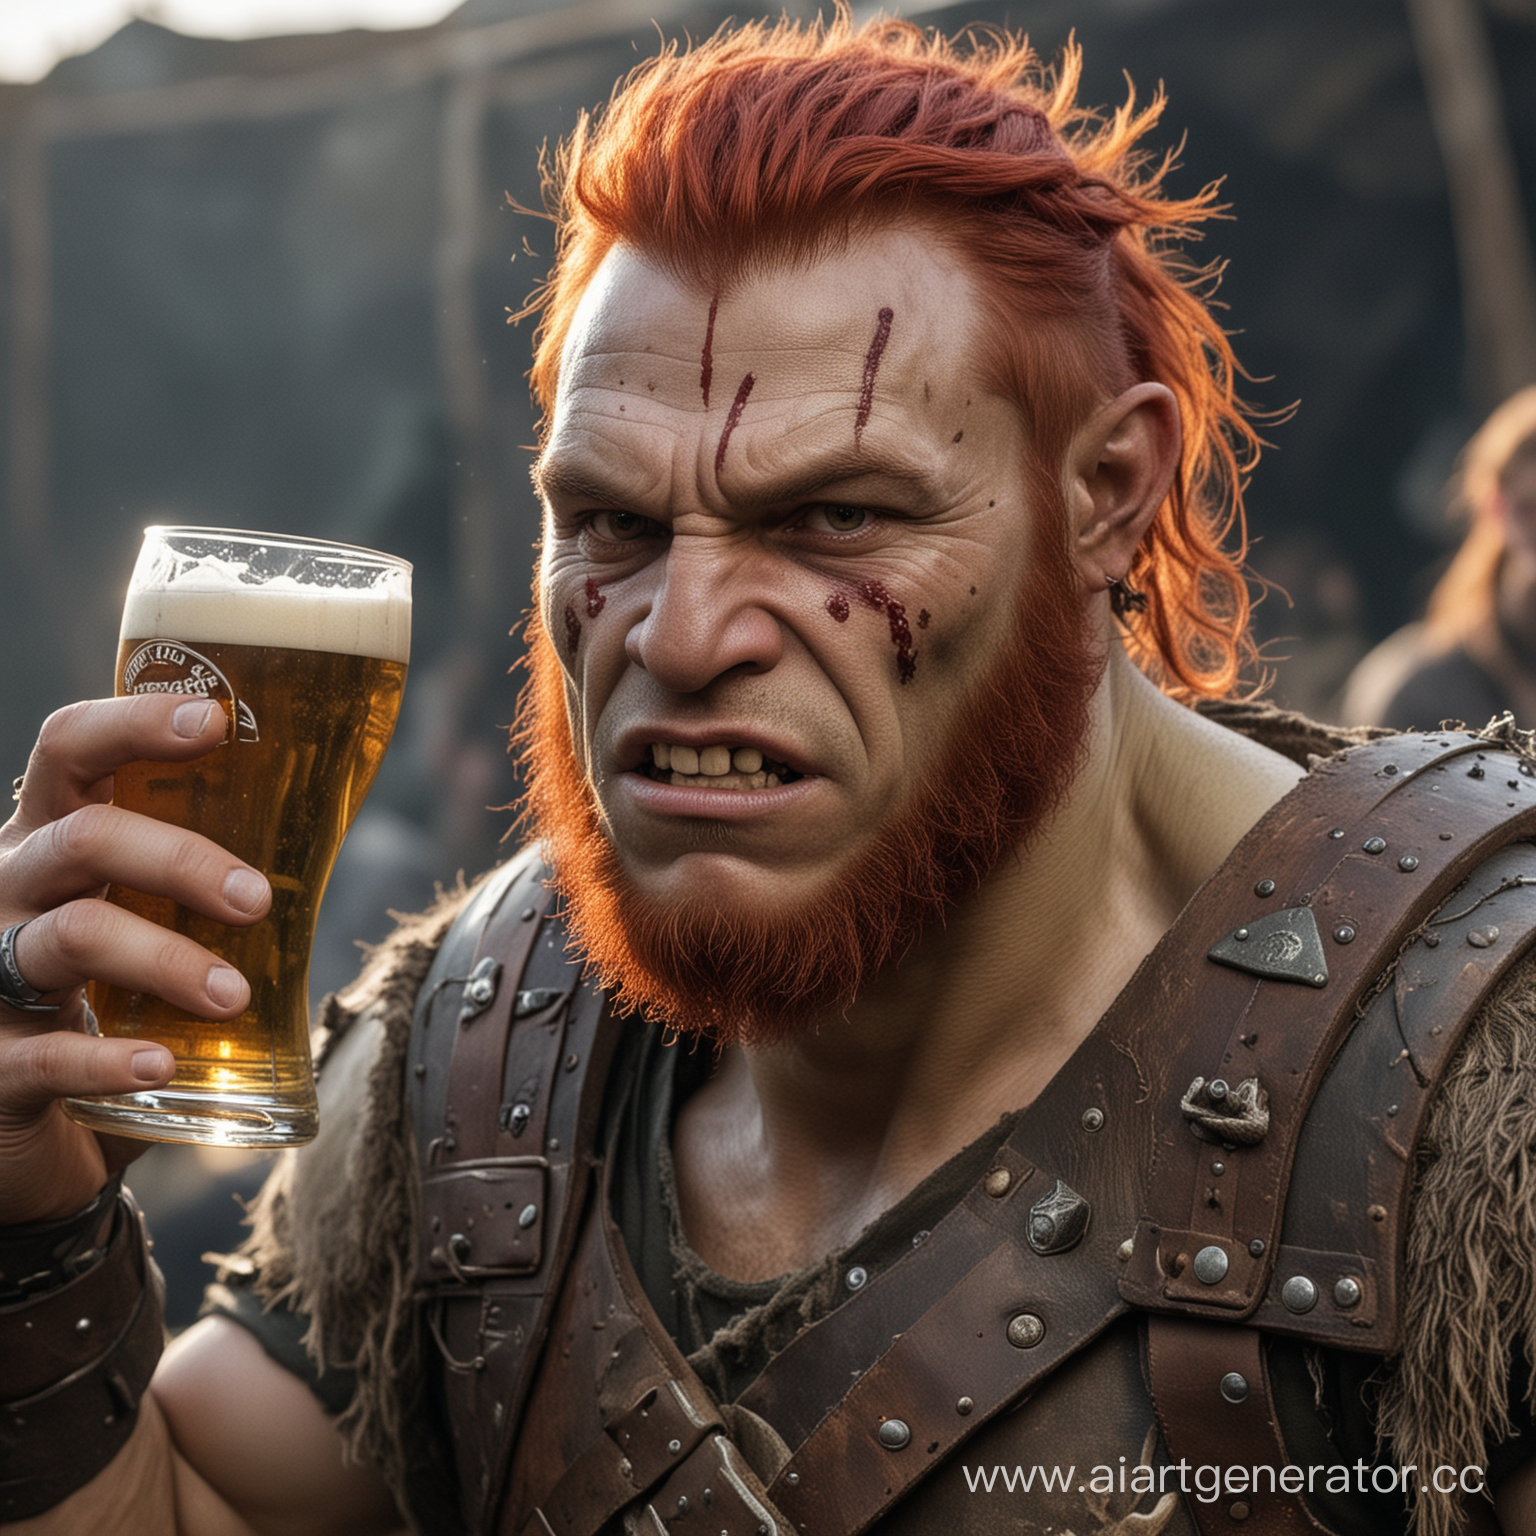 Орк со шрамами на лице и красными волосами, в руках пиво